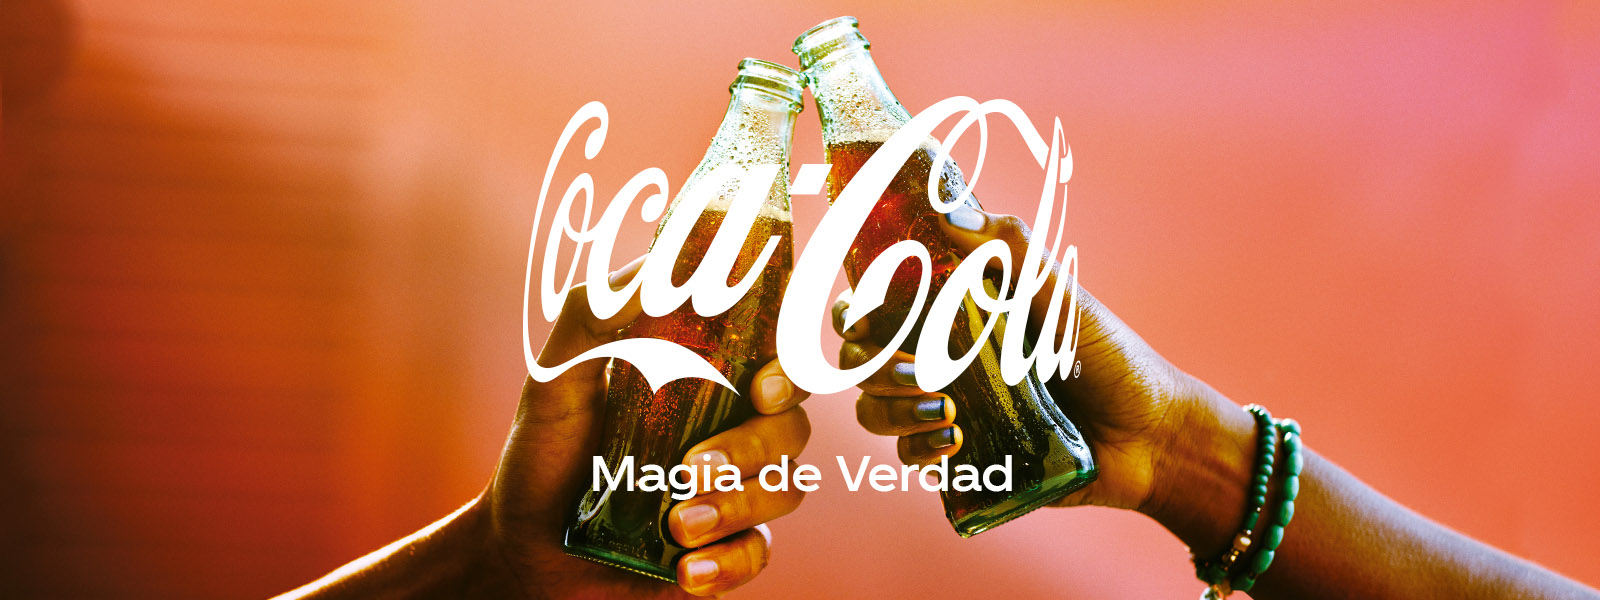 Dos manos sosteniendo una botella de vidrio de Coca-Cola brindando sobre un fondo difuso de color rojo. En el centro se observa el logo de Coca-Cola y el slogan “Magia de Verdad”.